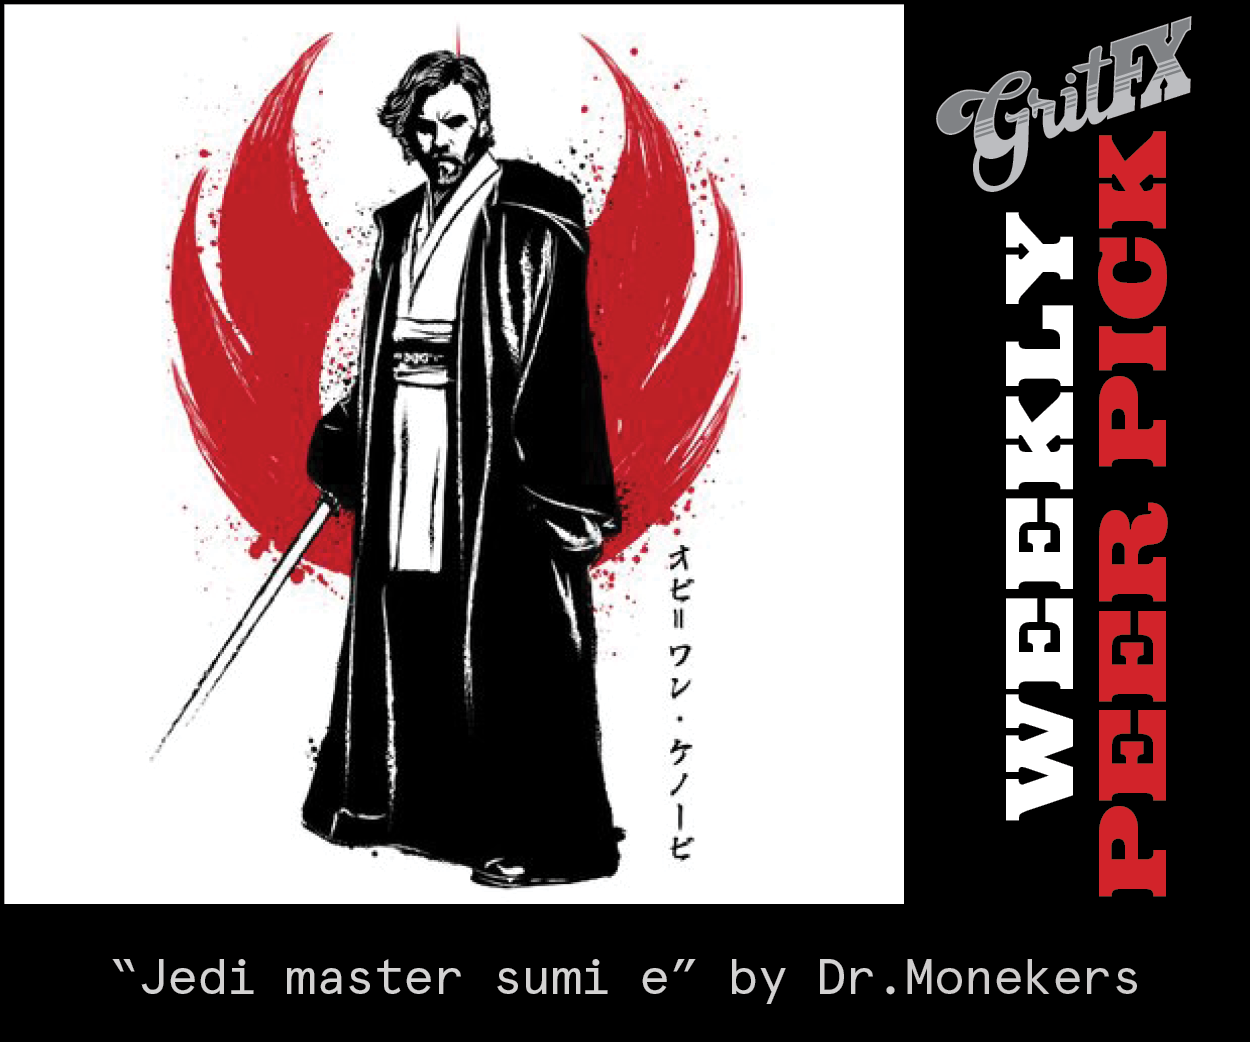 Jedi master sumi e by Dr.Monekers